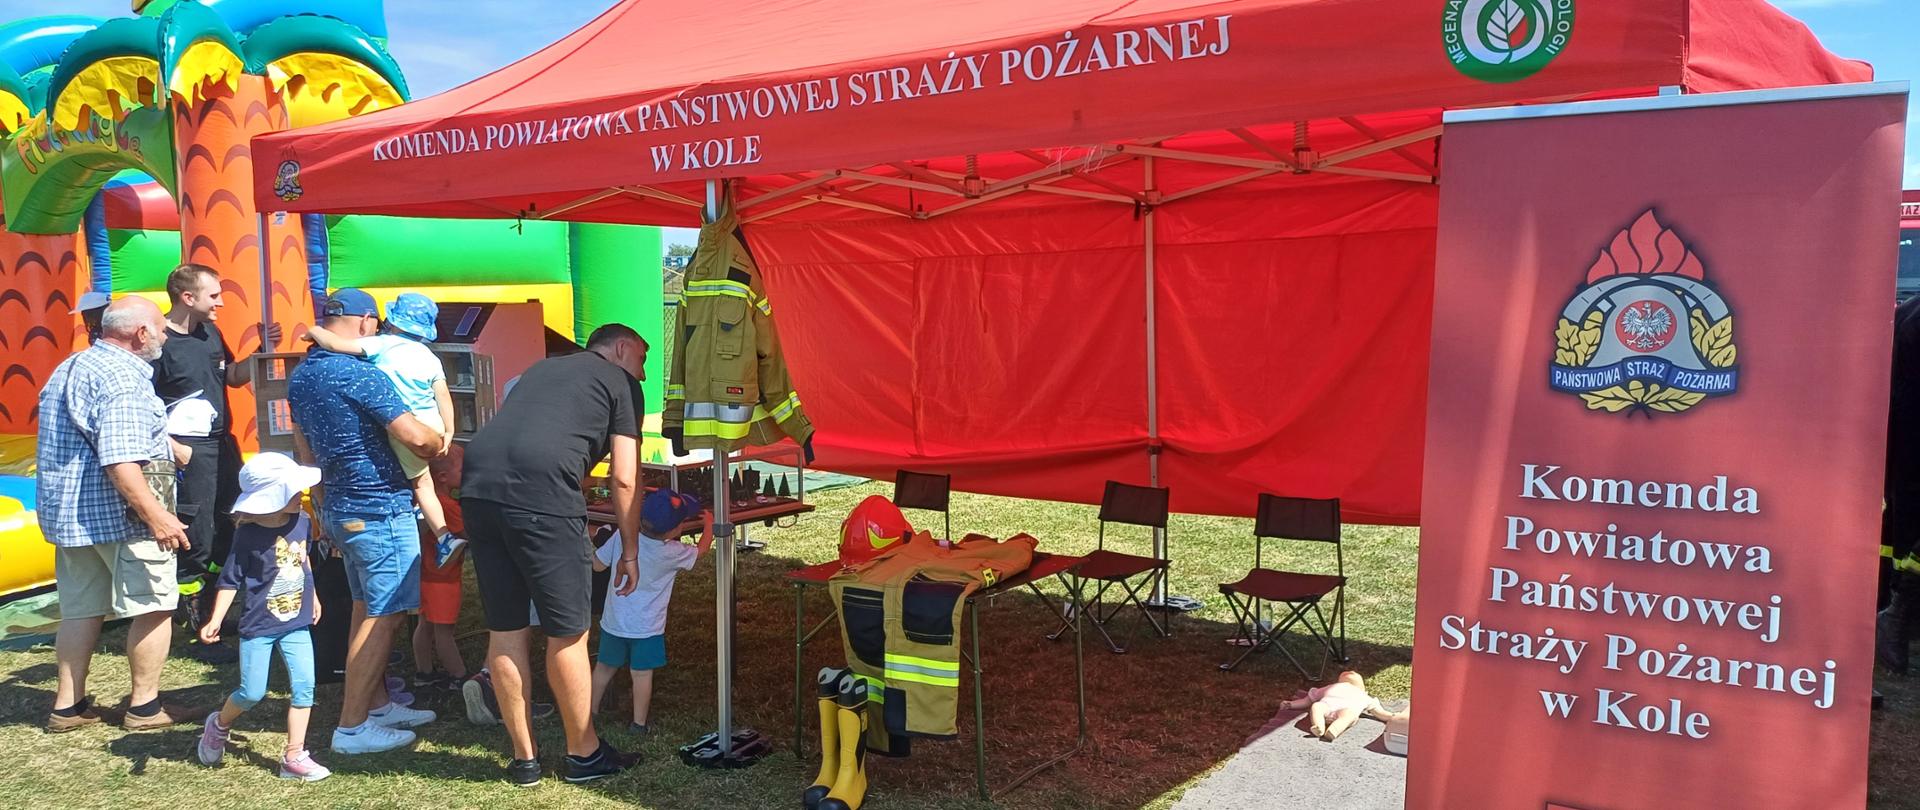 Zdjęcie przedstawia uczestników Pikniku Wojskowego w Dąbiu przy stoisku Komendy Powiatowej Państwowej Straży Pożarnej w Kole